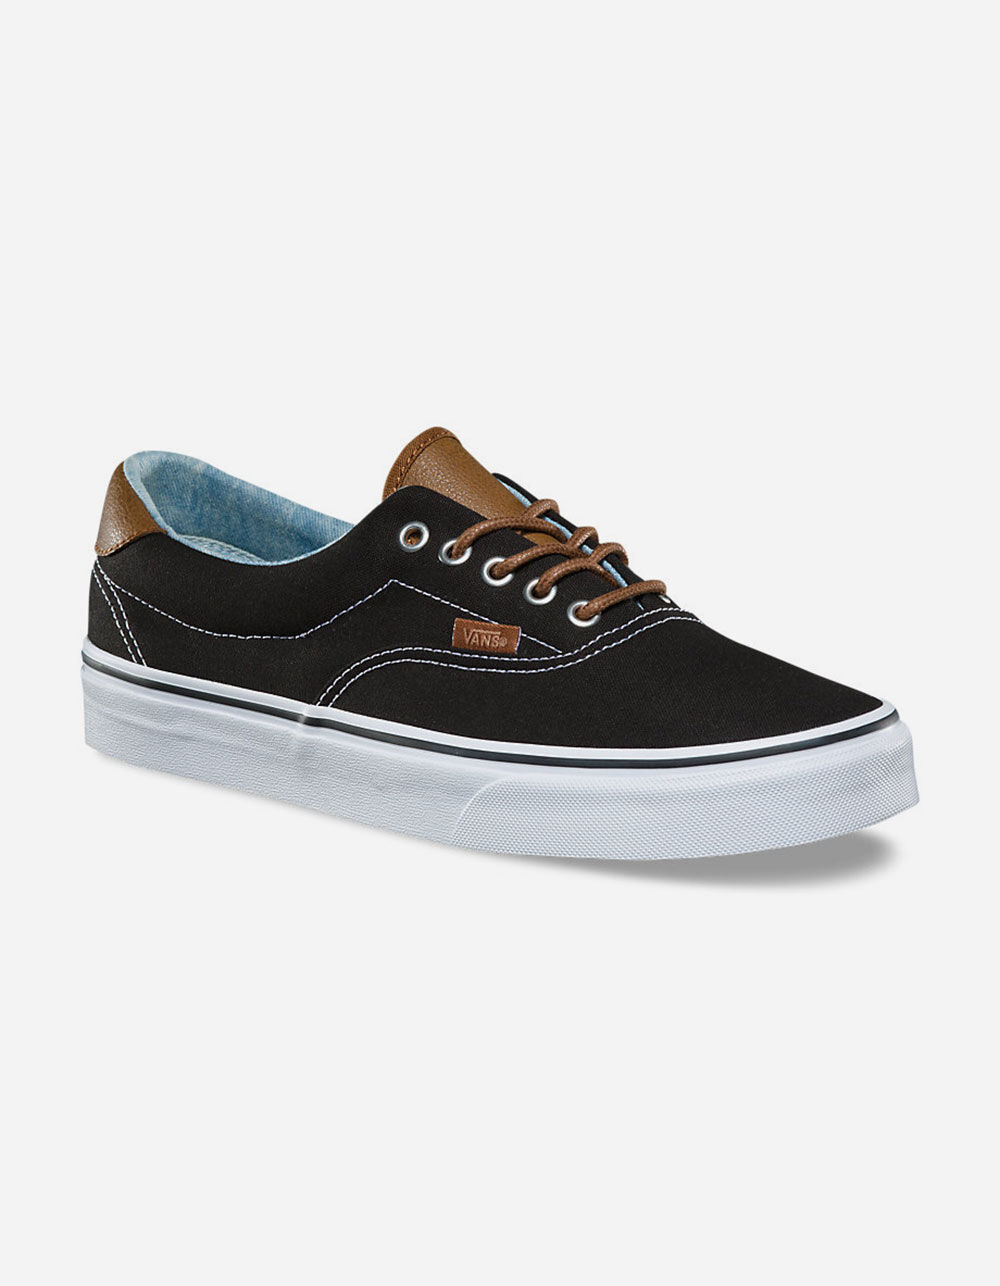 Vans Men's C&L Era 59 Black/Acid Denim Canvas Skate Shoes